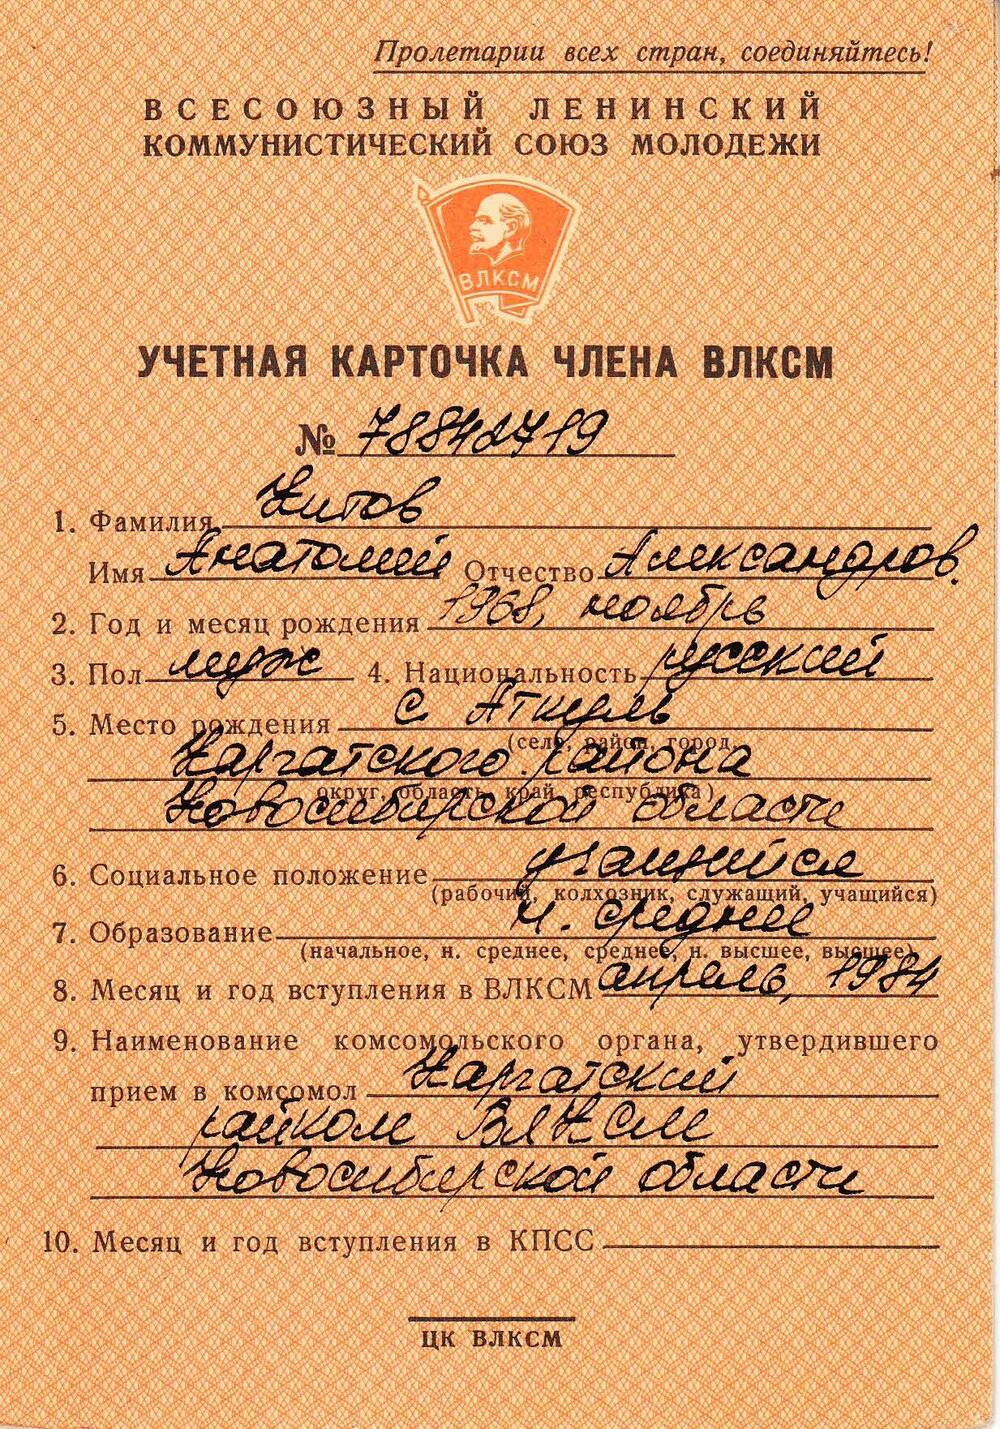 Учётная карточка члена ВЛКСМ № 78842719 Китова Анатолия Александровича